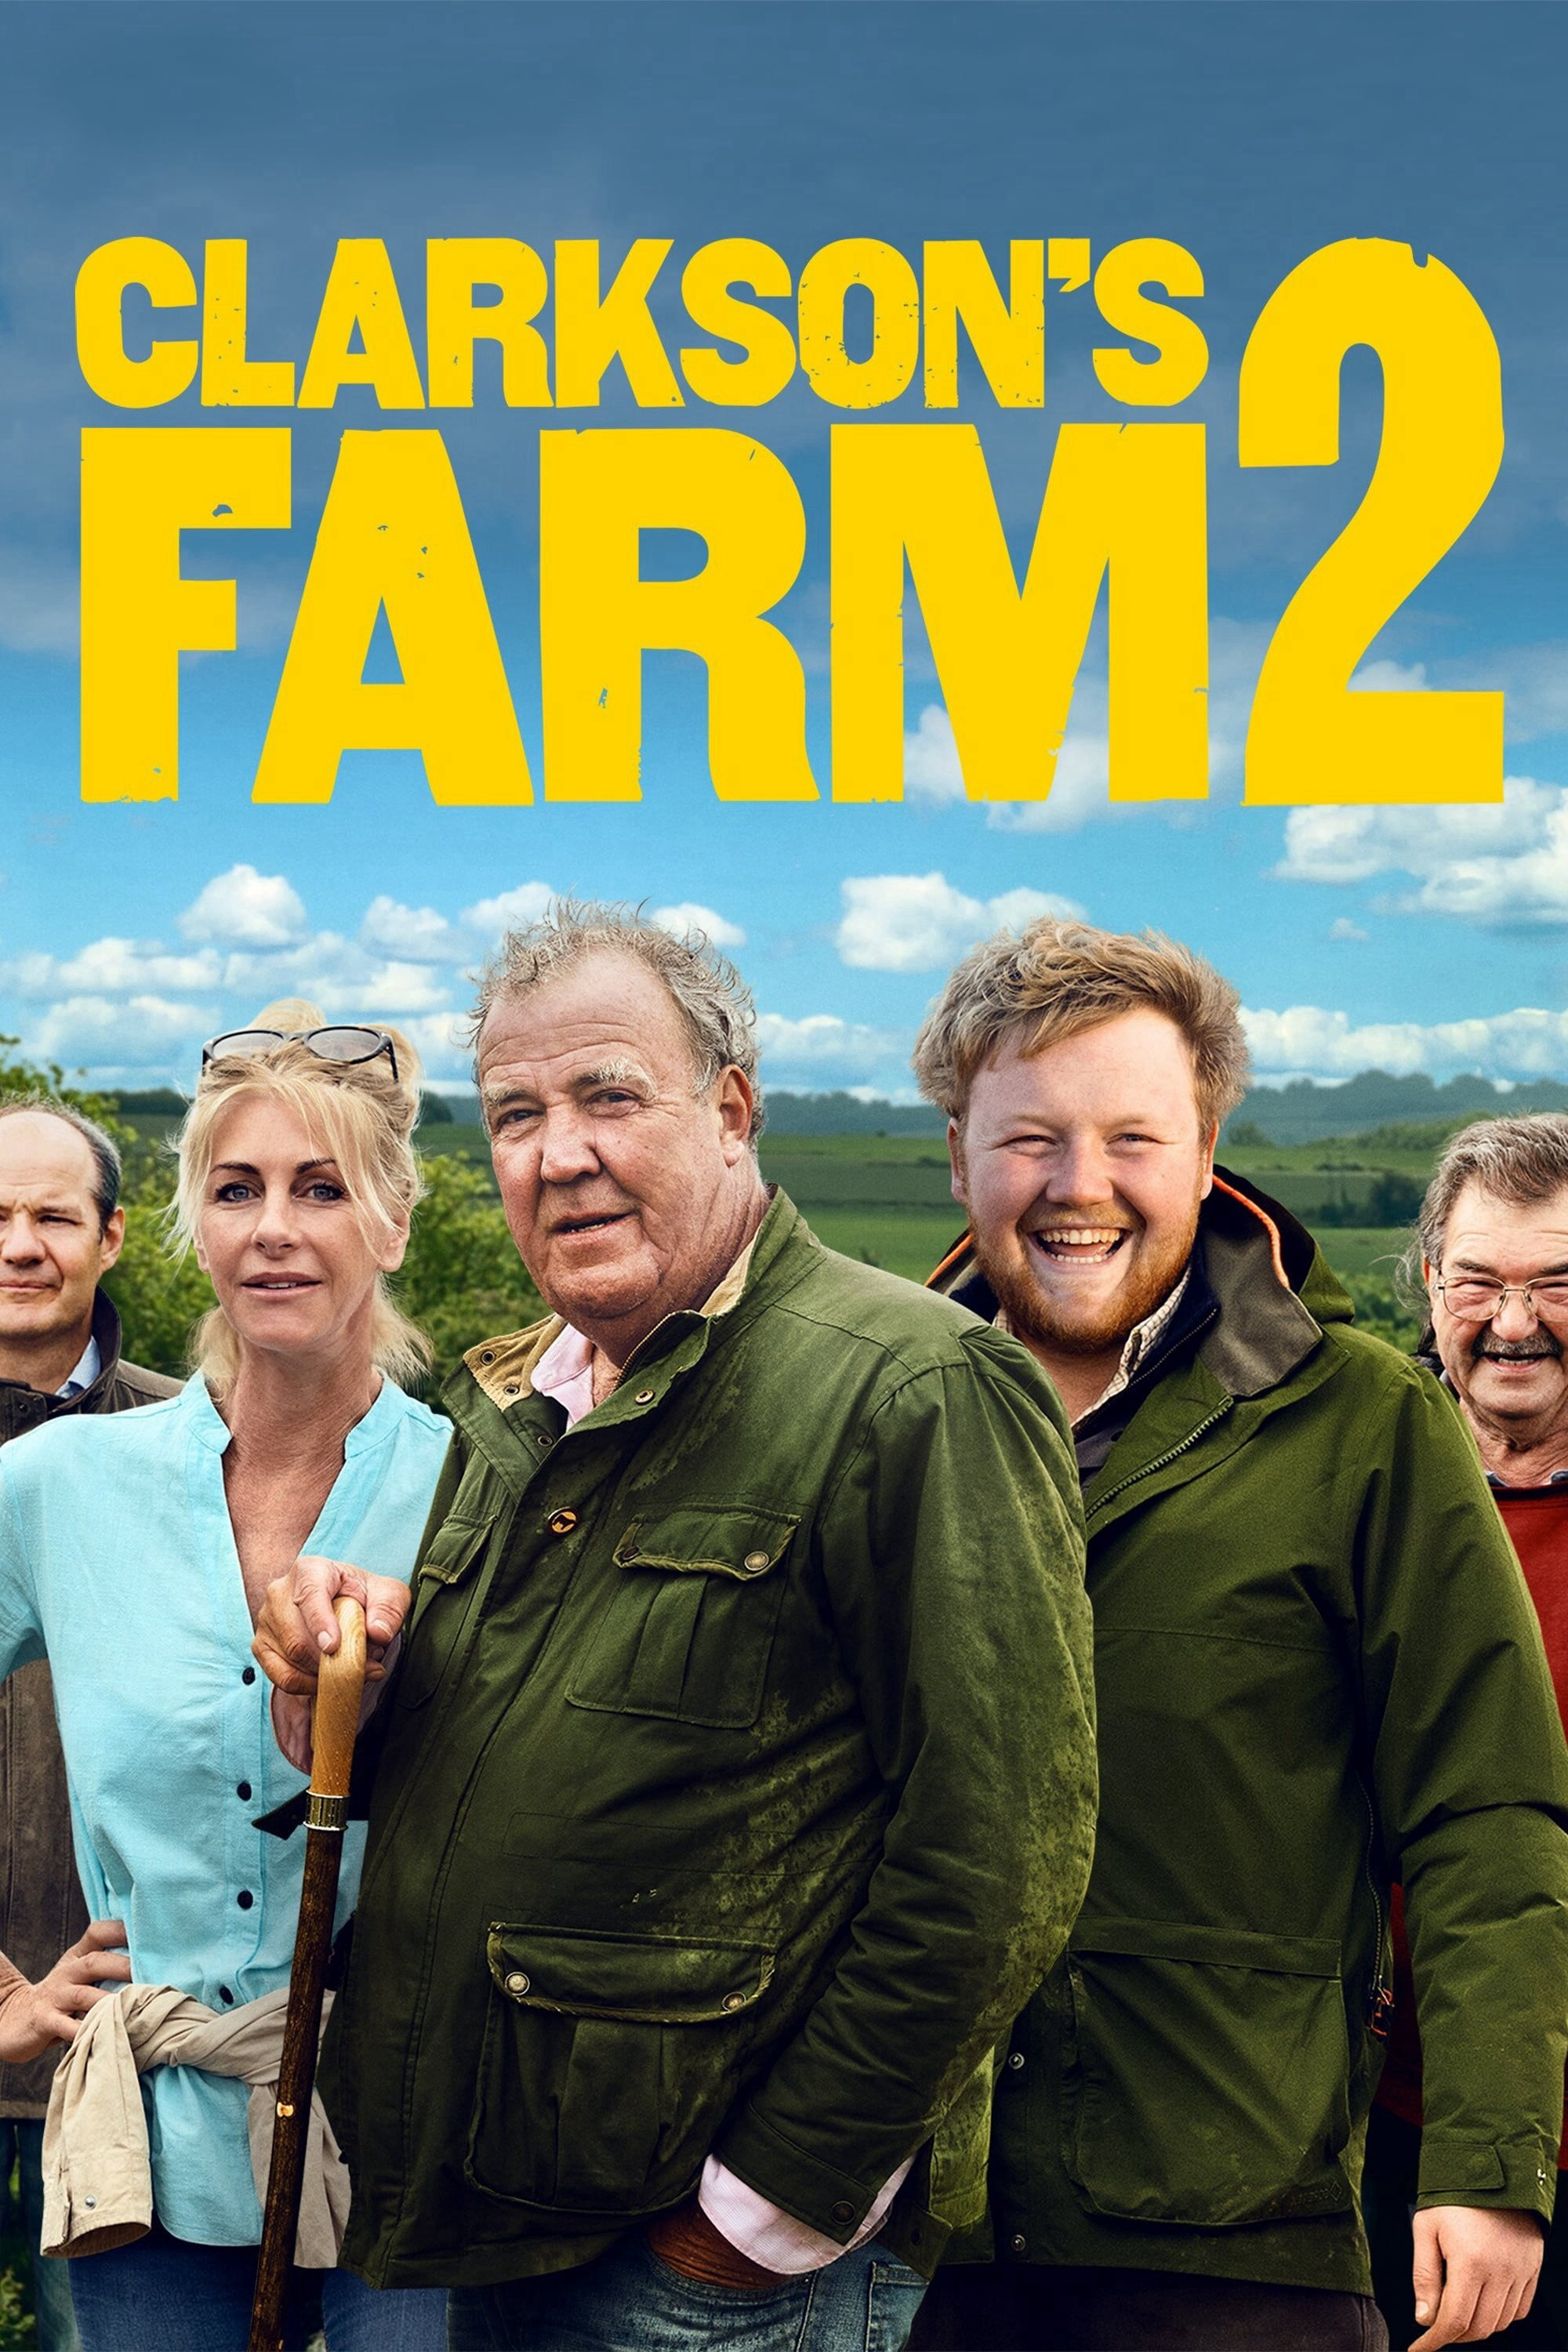 Trang Trại Clarkson (Phần 2) - Clarkson's Farm (Season 2)